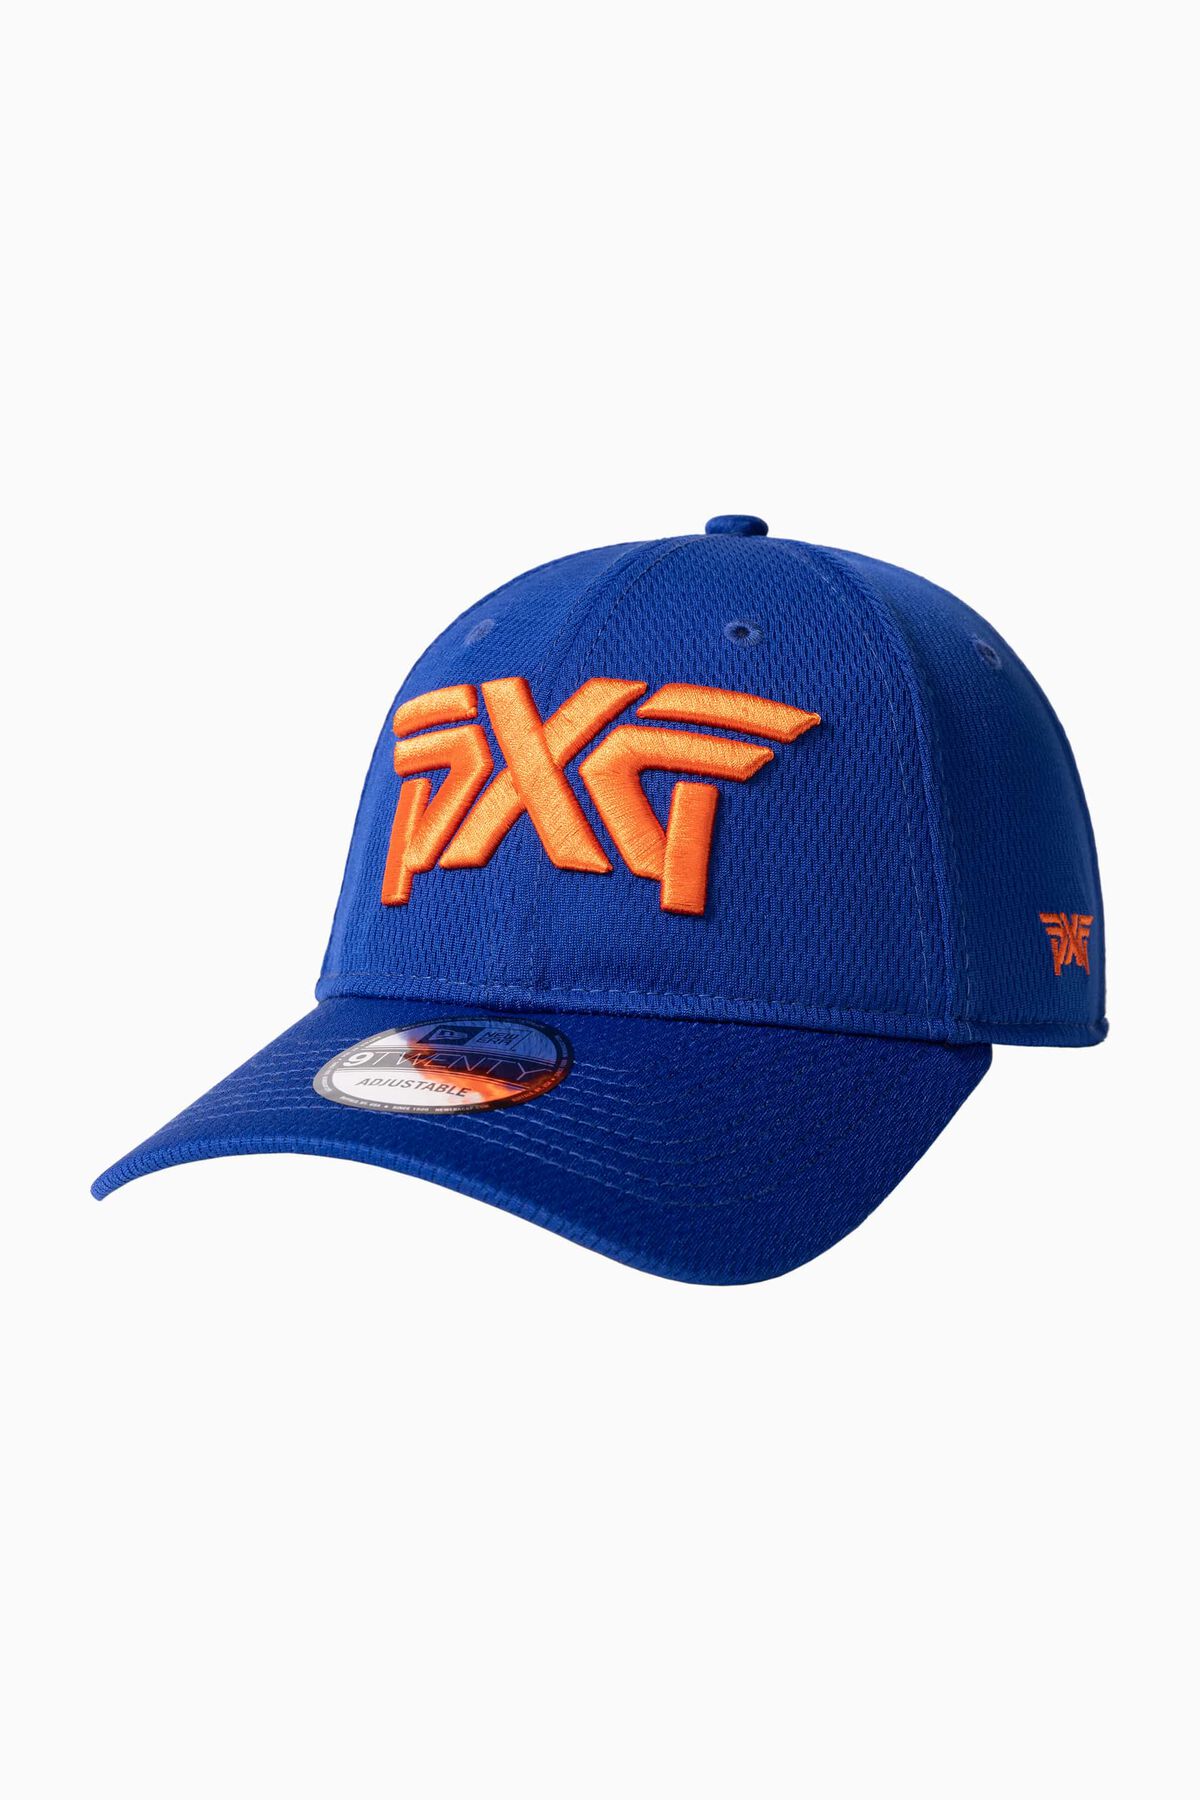 PXG NY/NJ Blue/Orange 9TWENTY Adjustable Cap 